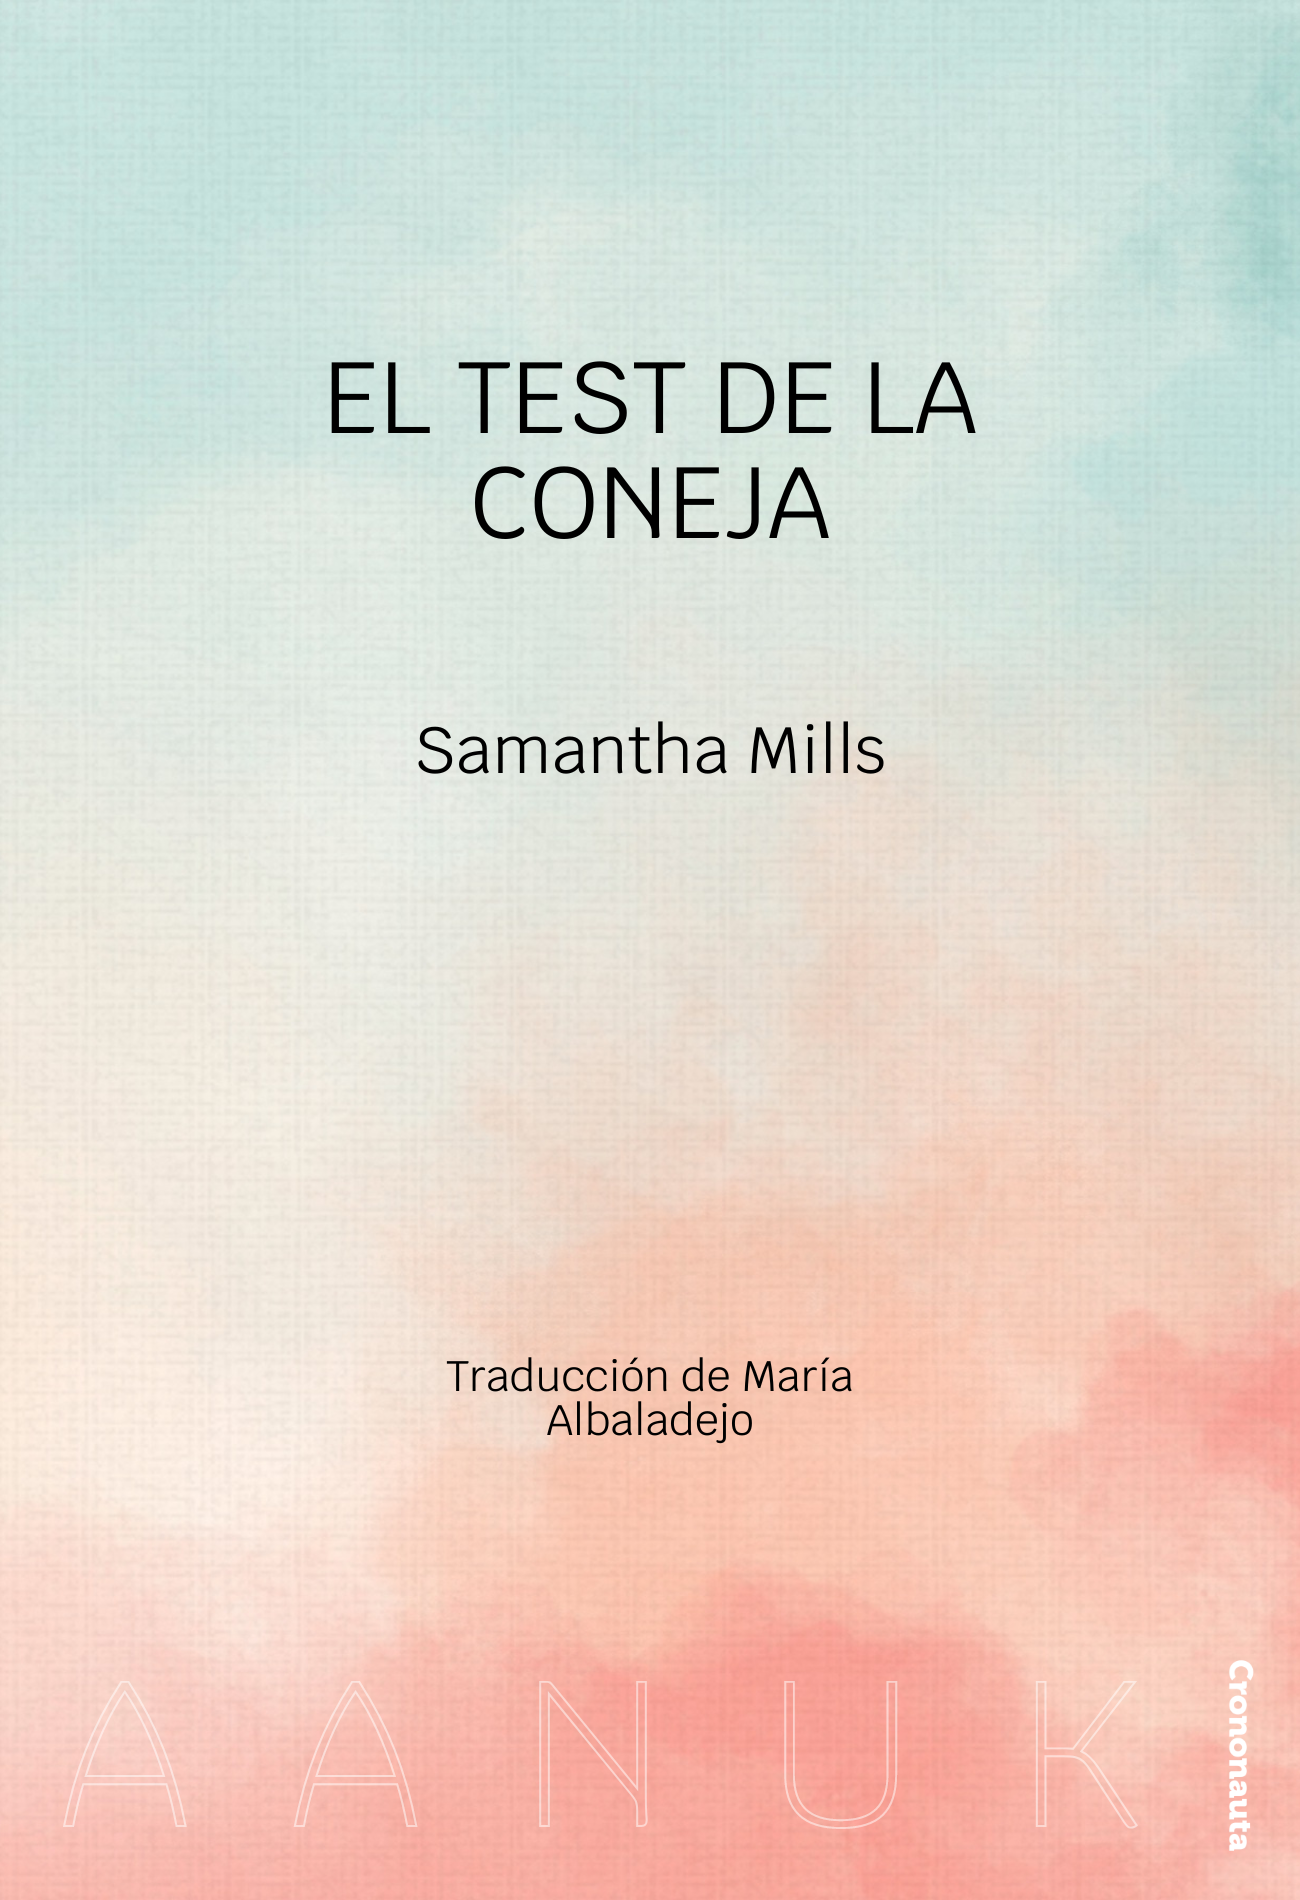 El test de la coneja, de Samantha Mills. Traducción de María Albaladejo. En Aanuk.